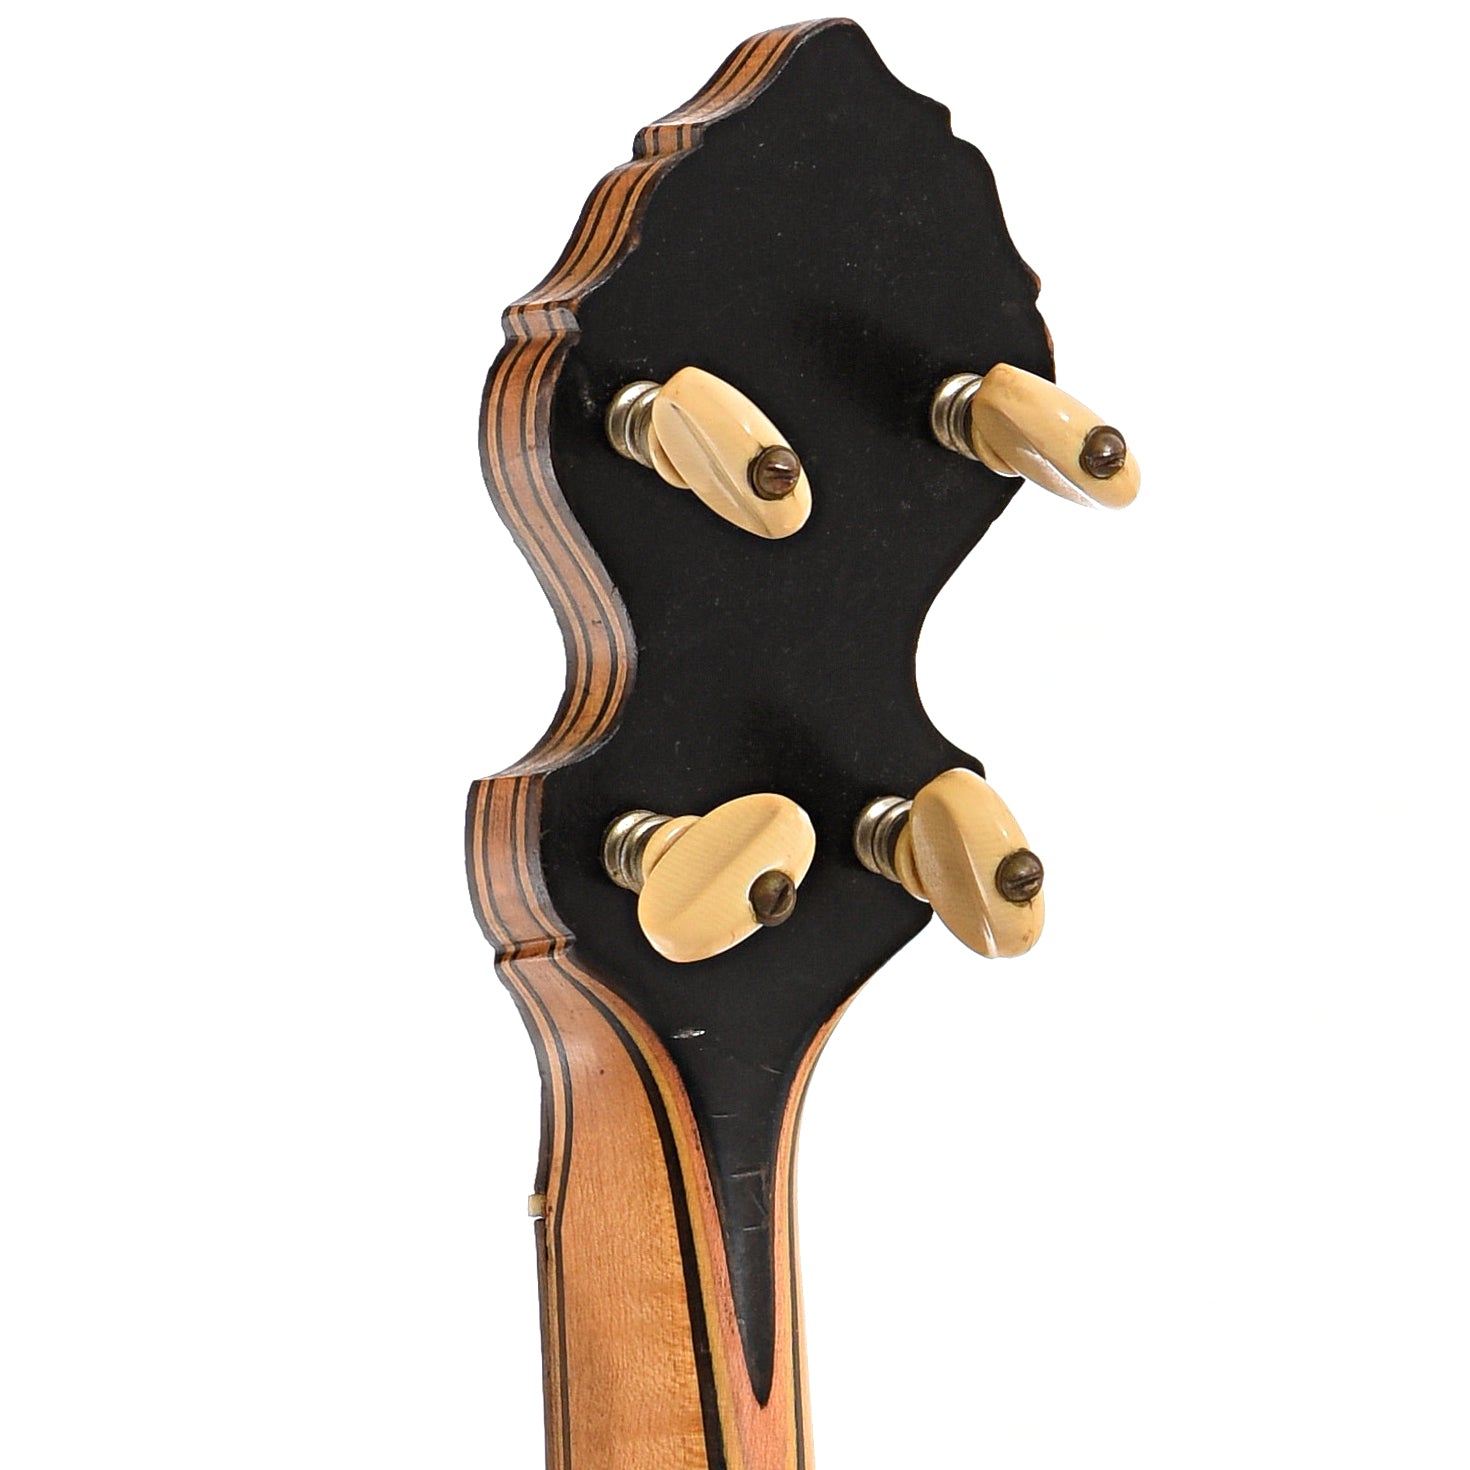 Orpheum No.2 Tenor Banjo (c.1920) – Elderly Instruments